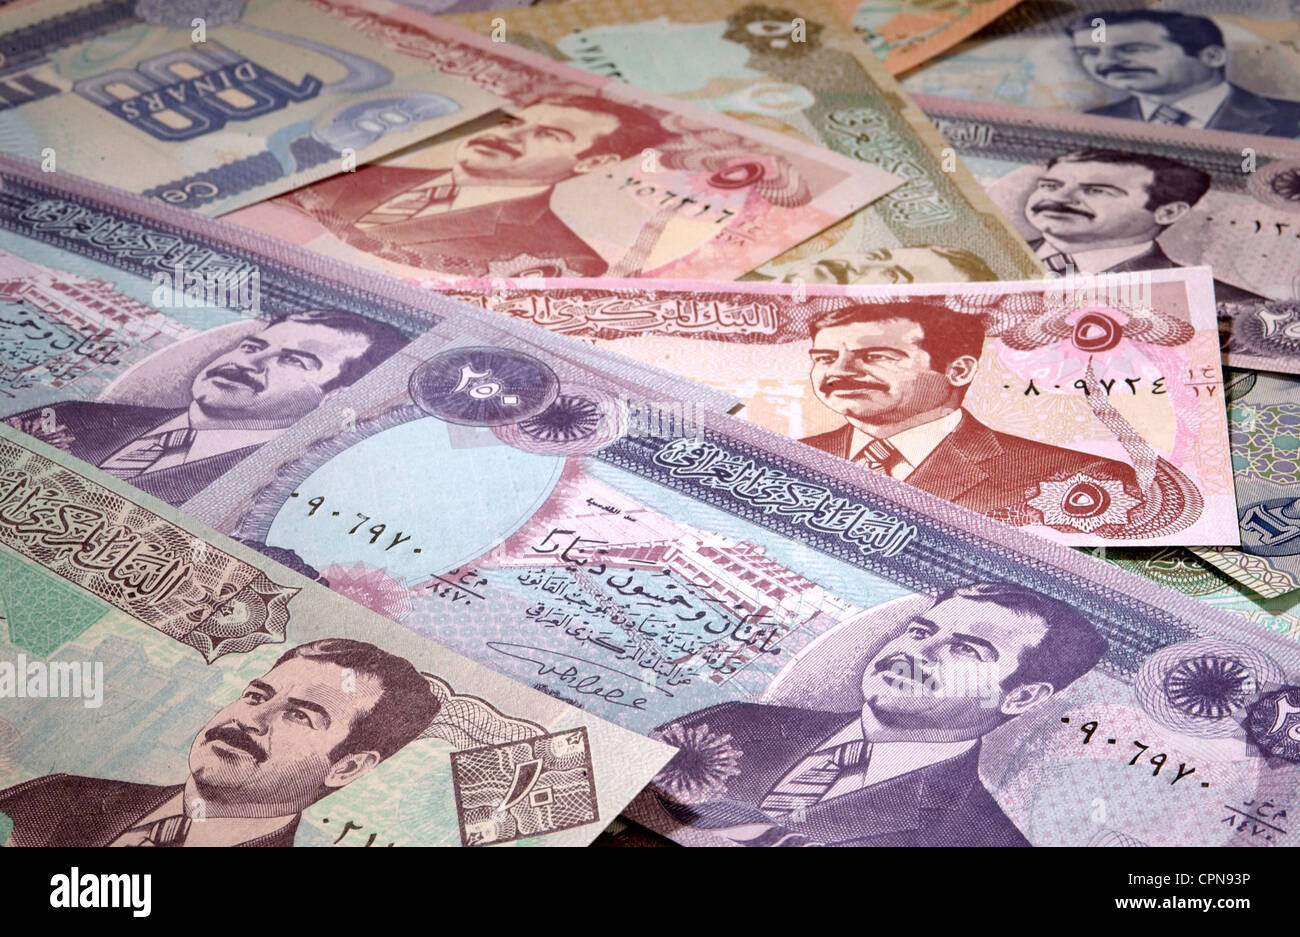 Dinero / finanzas, billete, Irak, dinar, billete iraquí con el retrato de Saddam Hussein, moneda, monedas, valuta, dinar, símbolo, símbolos, simbólico, símbolo de imagen, economía, iraquí, dinero, varios, culto a la personalidad, dictador, dictadores, billete, billete, billete, billete, billete, billetes, billetes, billetes, billetes, billetes, billetes, billetes, billetes, billetes, históricos, históricos, derechos adicionales-Clearences-no disponible Foto de stock